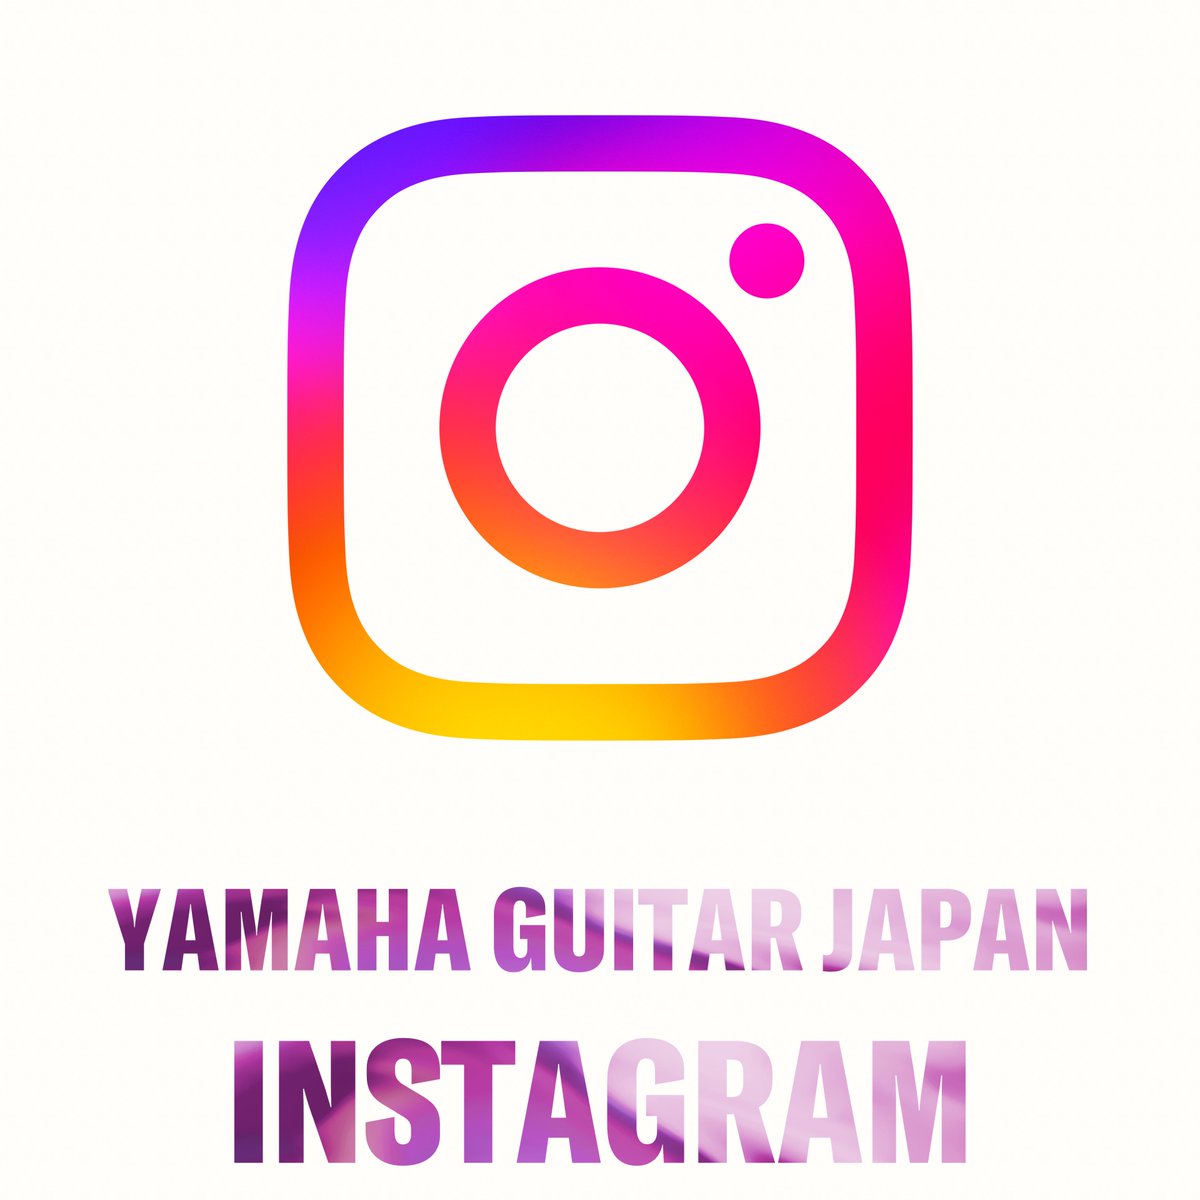 💝公式Instagram Yamaha Guitar Japan 公式 #インスタグラム 更新中🔄 是非フォローをお願いします🔽 instagram.com/yamaha_guitar_…